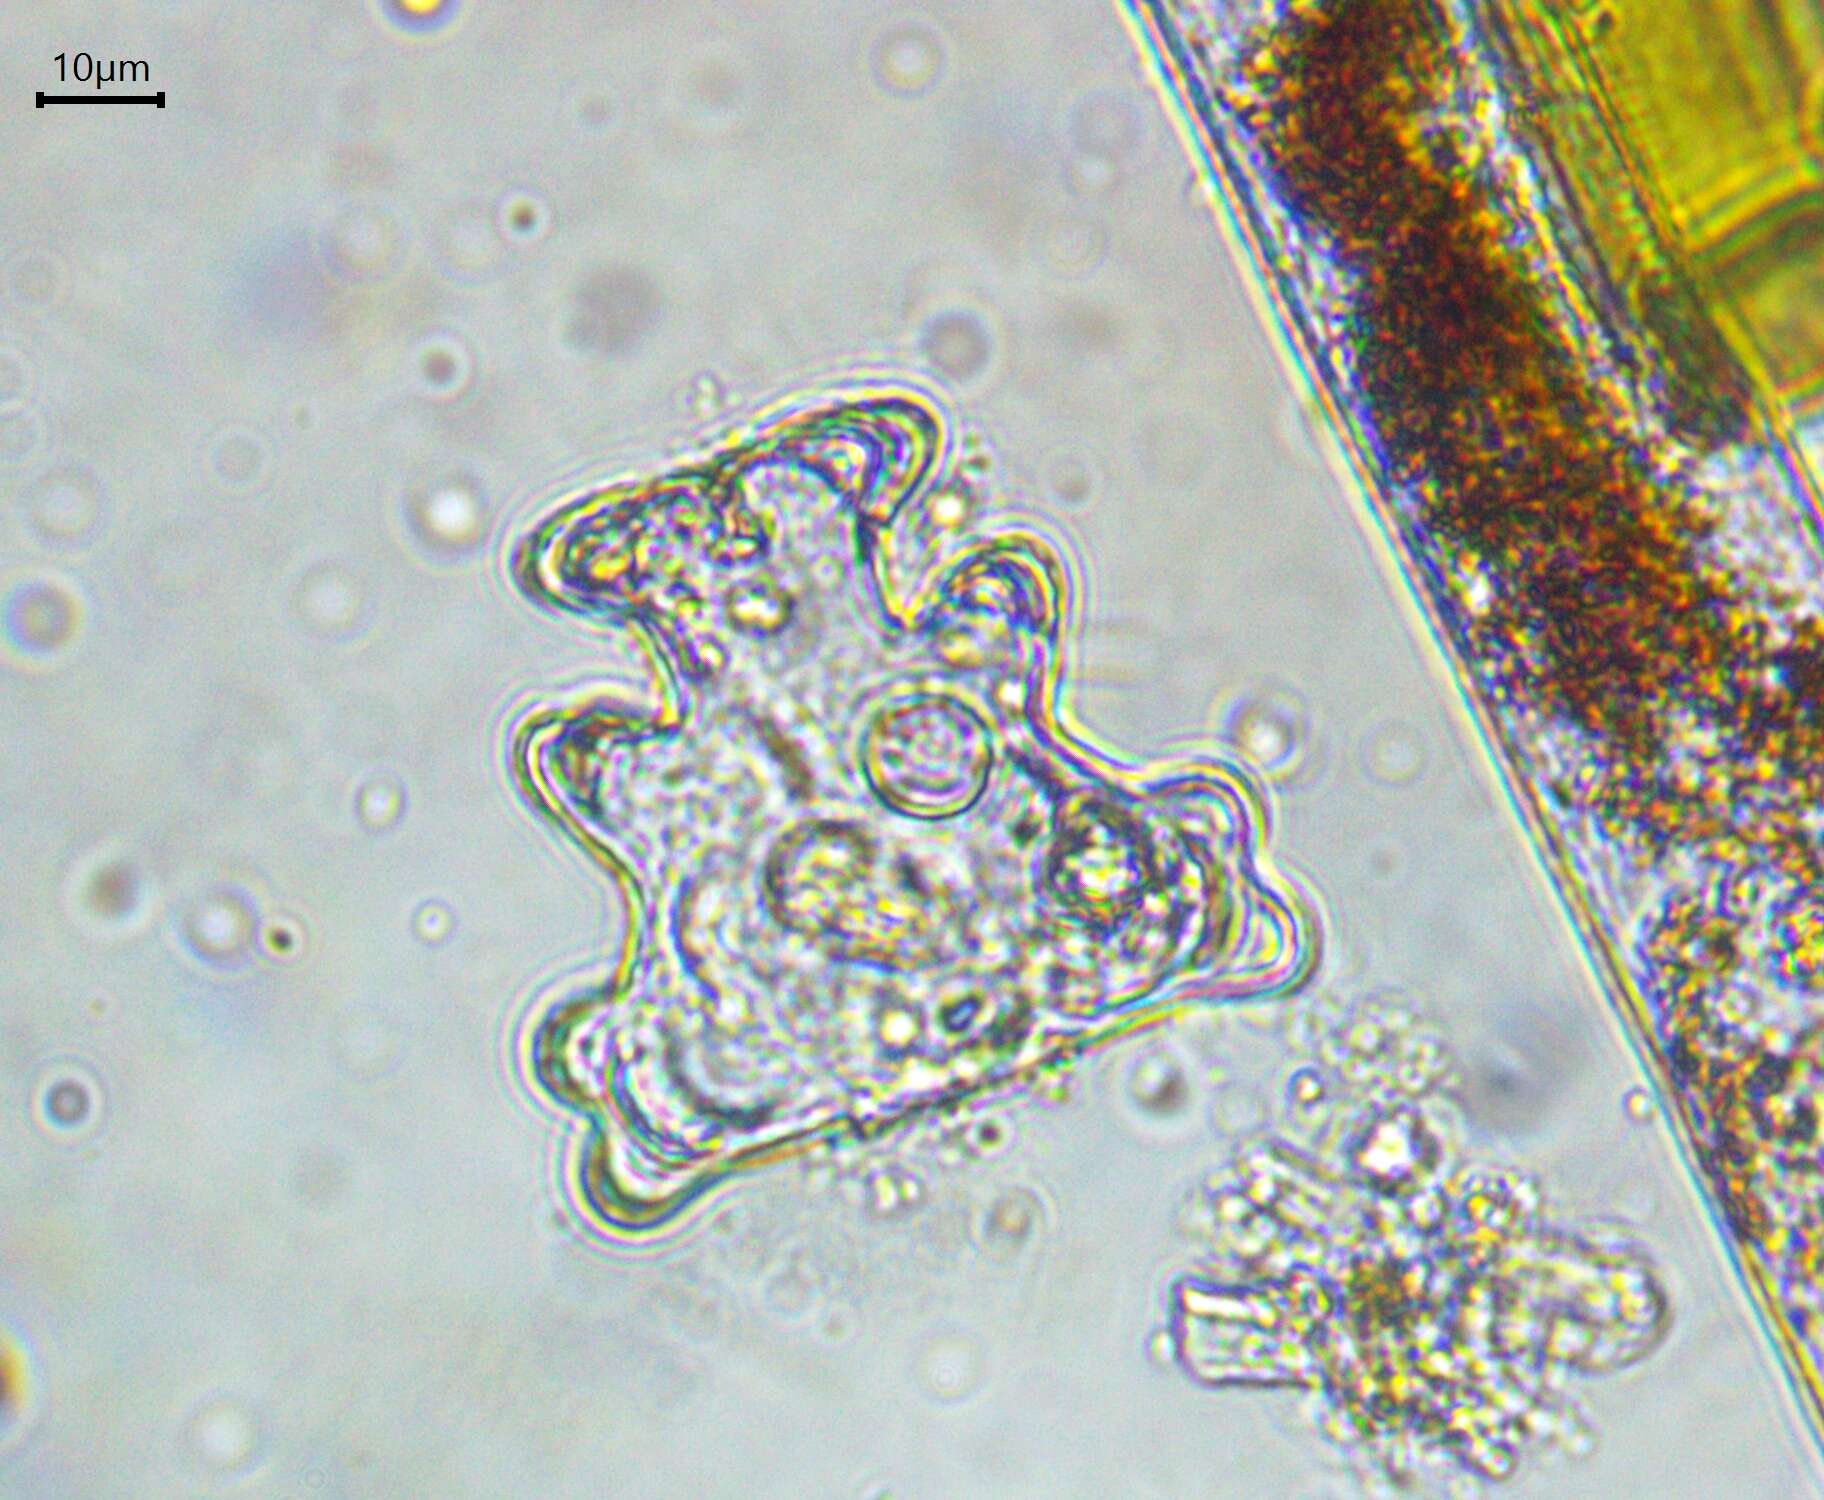 Image of Euastrum humerosum var. affine